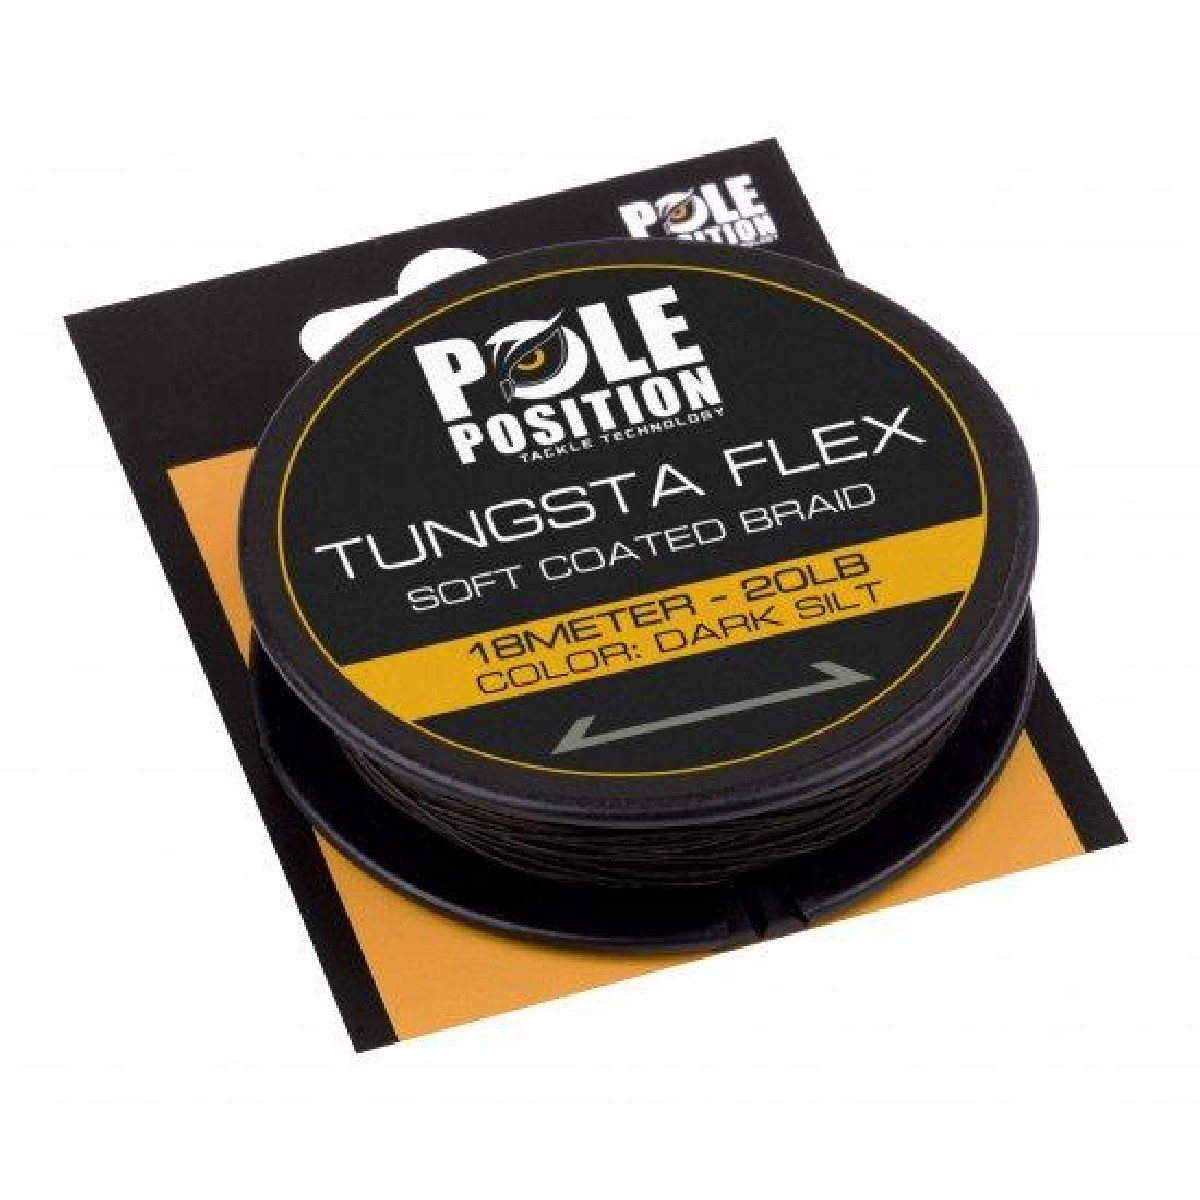 PolePosition Tungstaflex Dark Silt 18m 30 lb